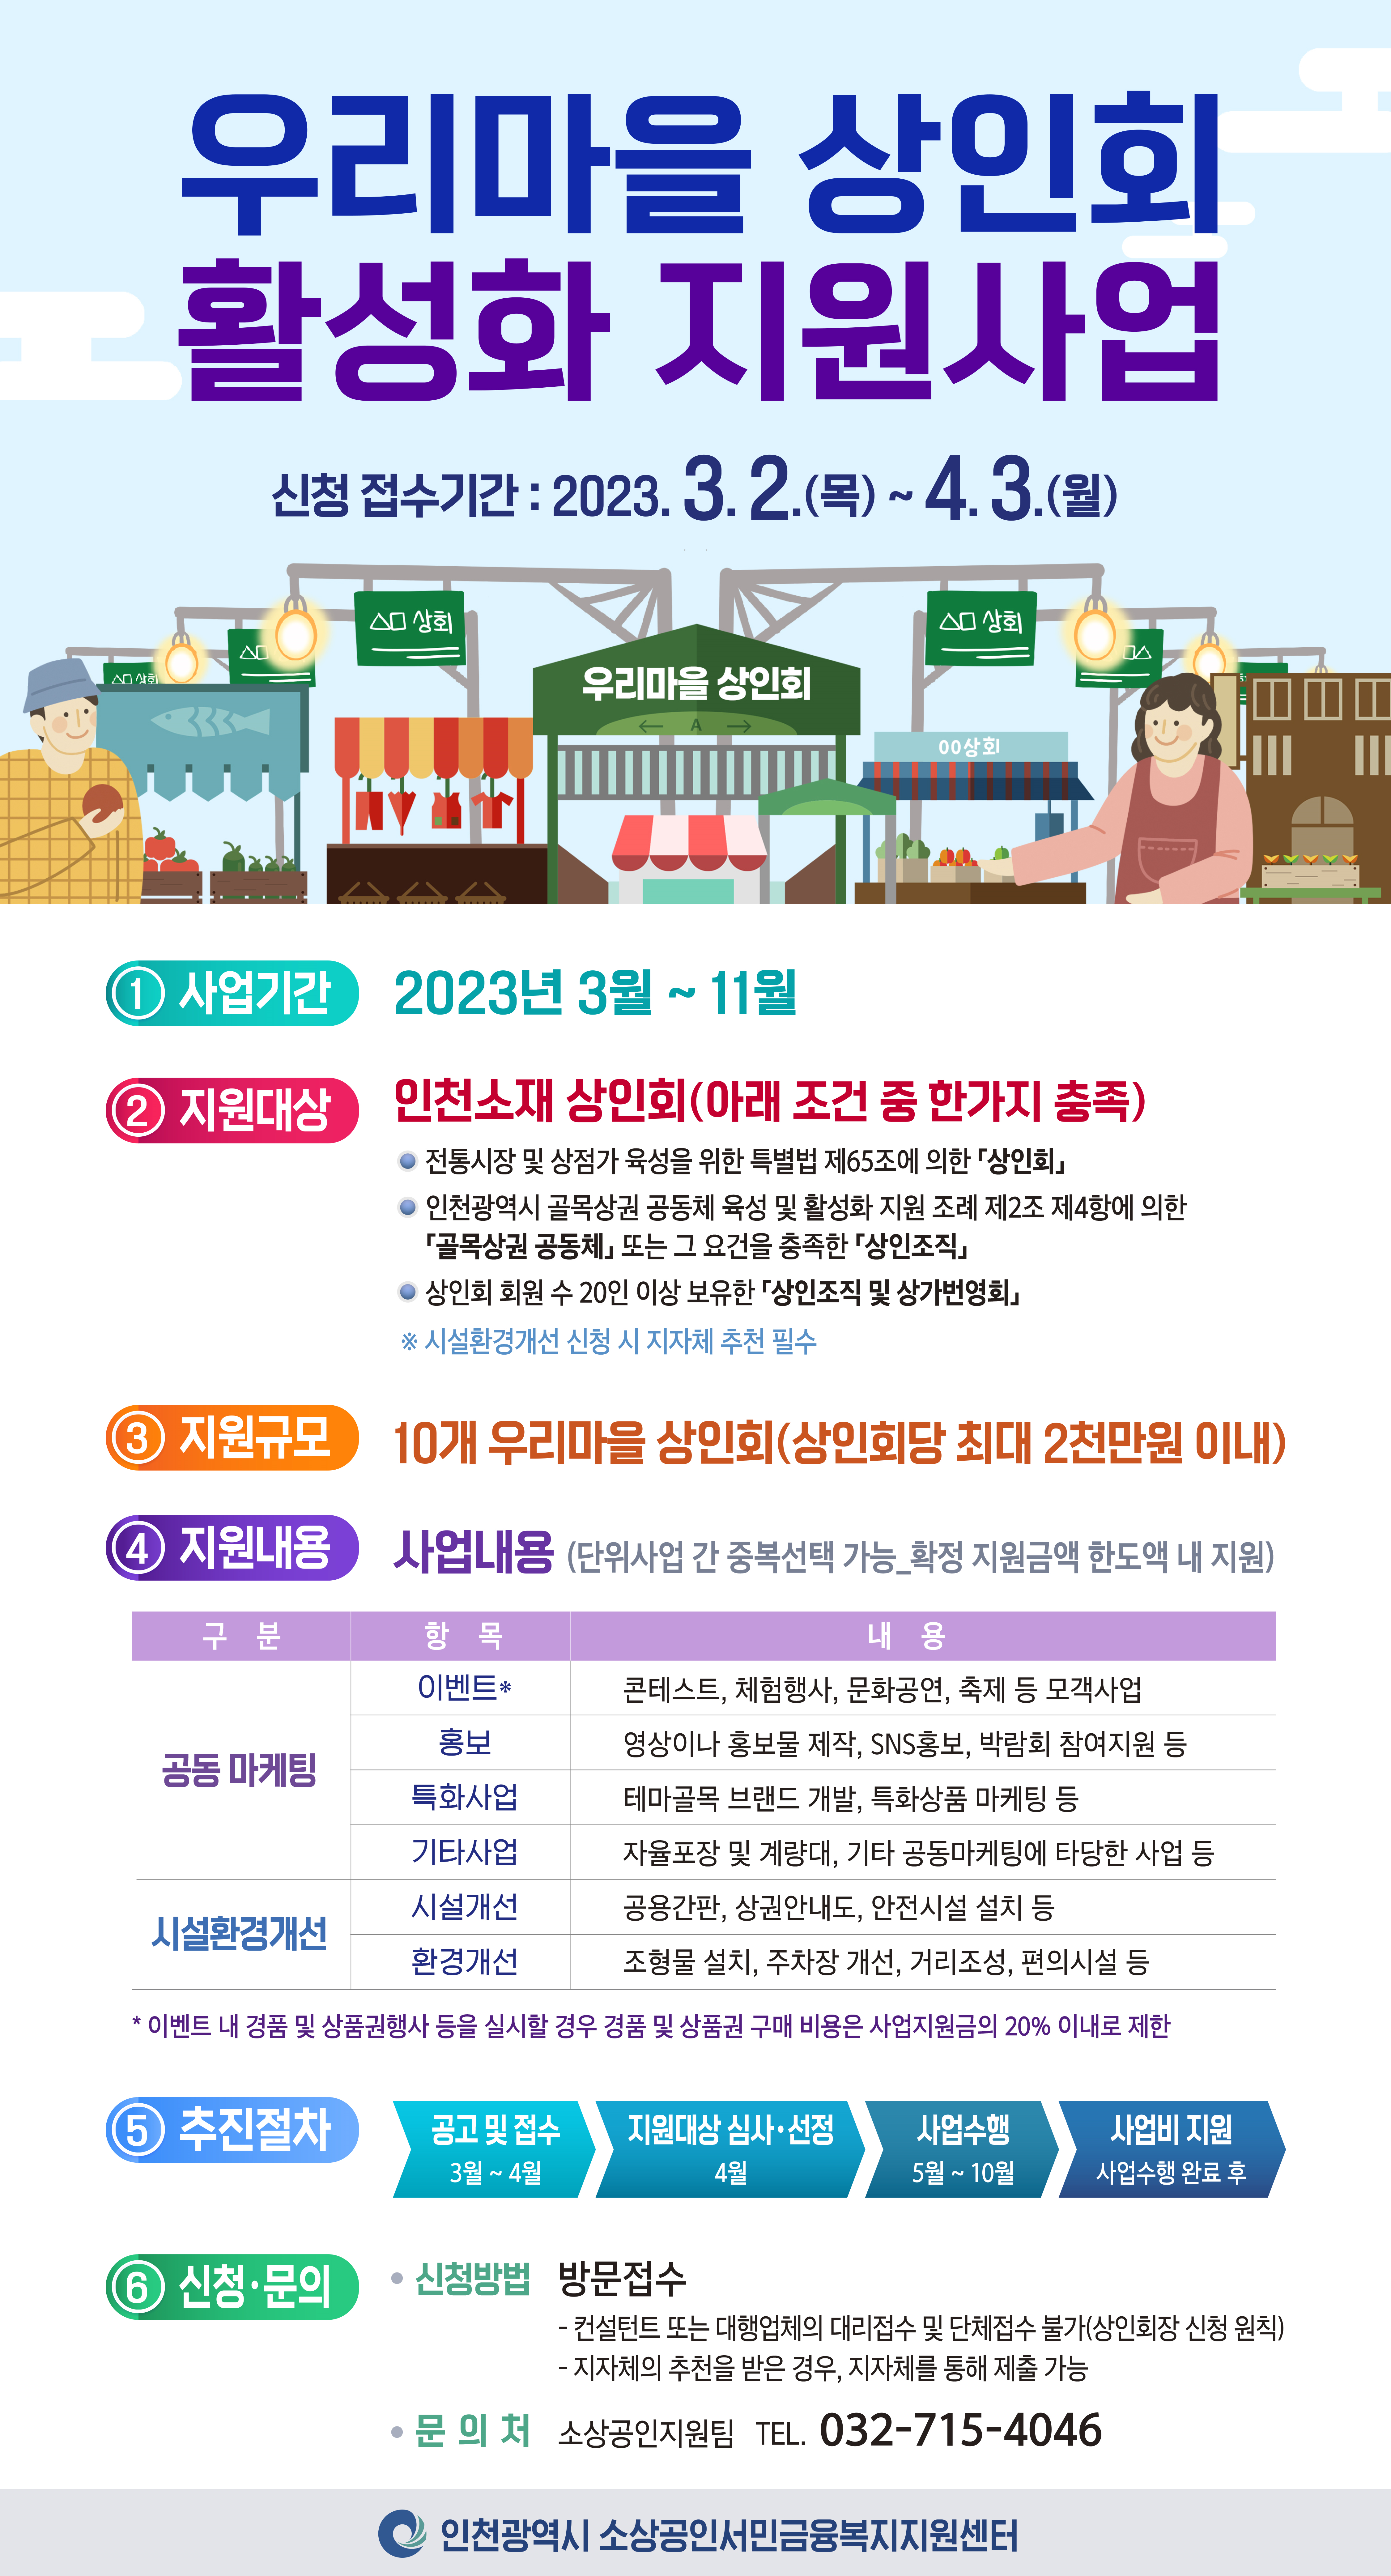 우리마을 상인회 활성화 지원사업 홍보포스터